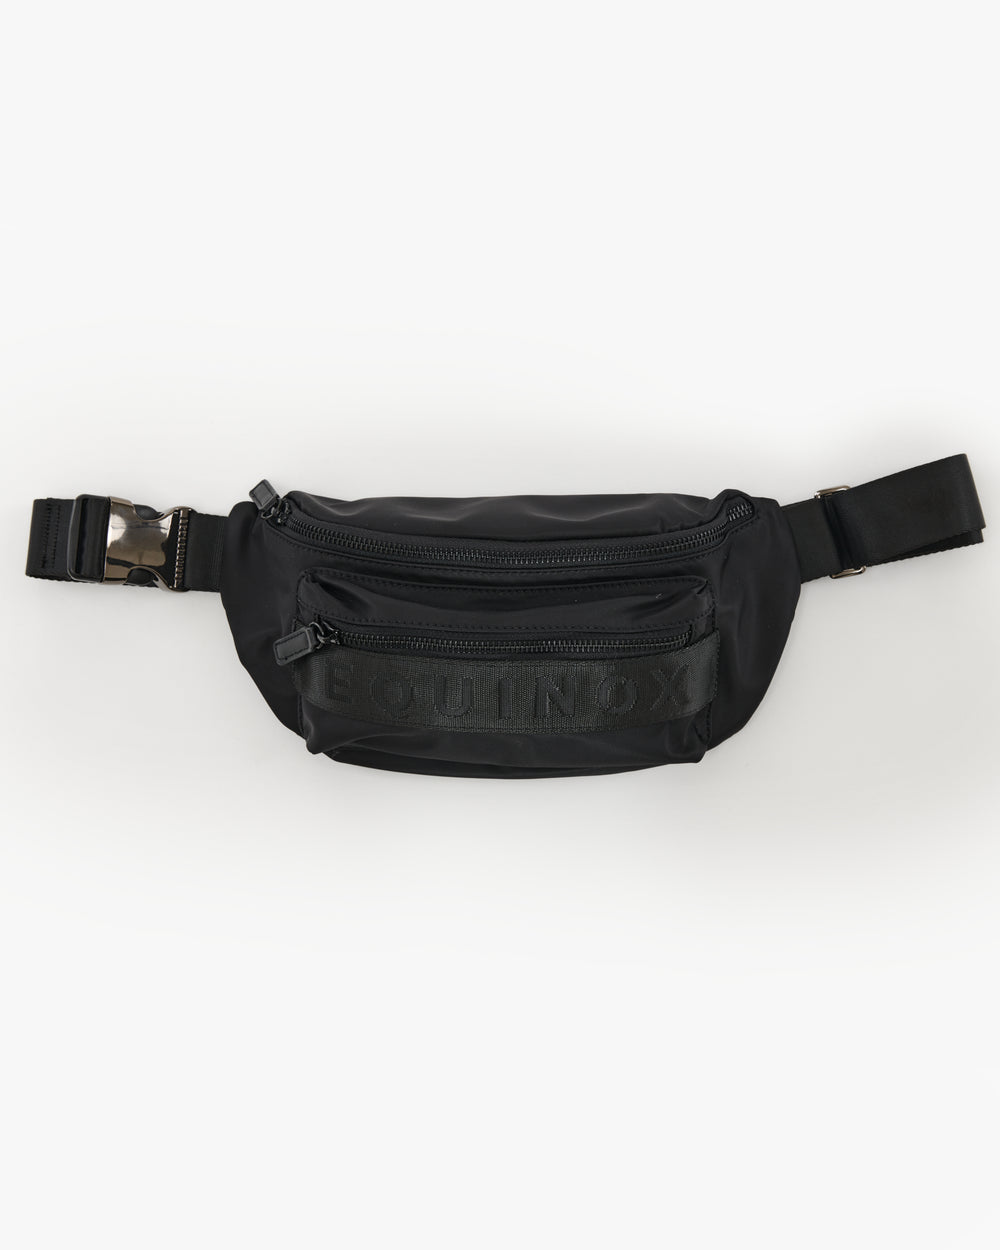 Equinox Belt Bag